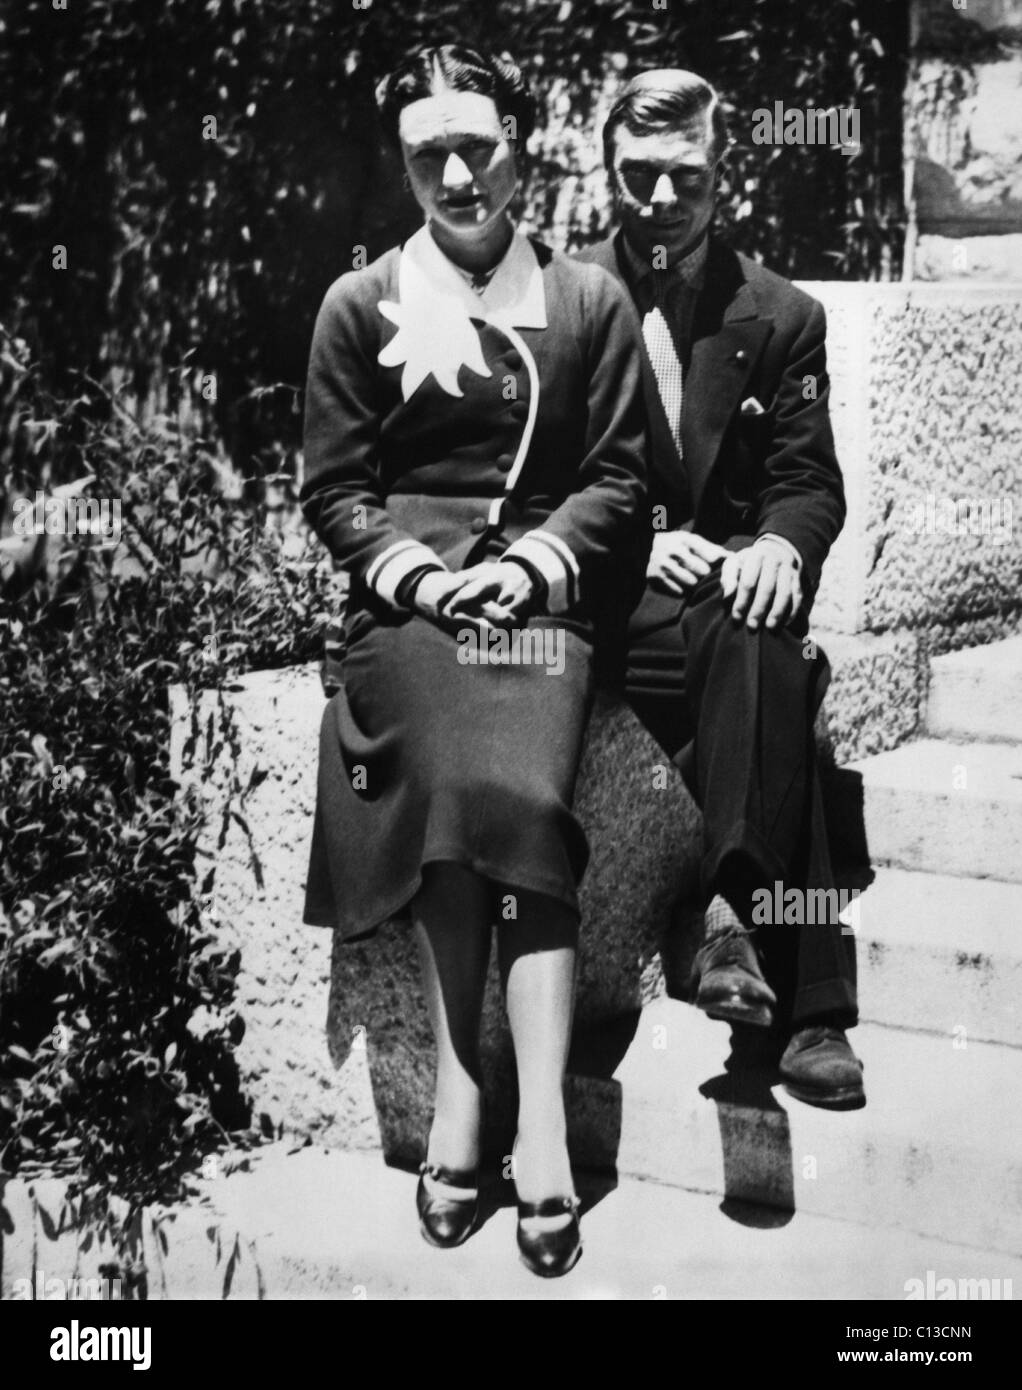 La duchessa di Windsor Wallis Simpson e Prince Edward, duca di Windsor sul loro primo anniversario di matrimonio, Chateau de la Croe, Antibes, Francia, giugno 3, 1938. Foto Stock